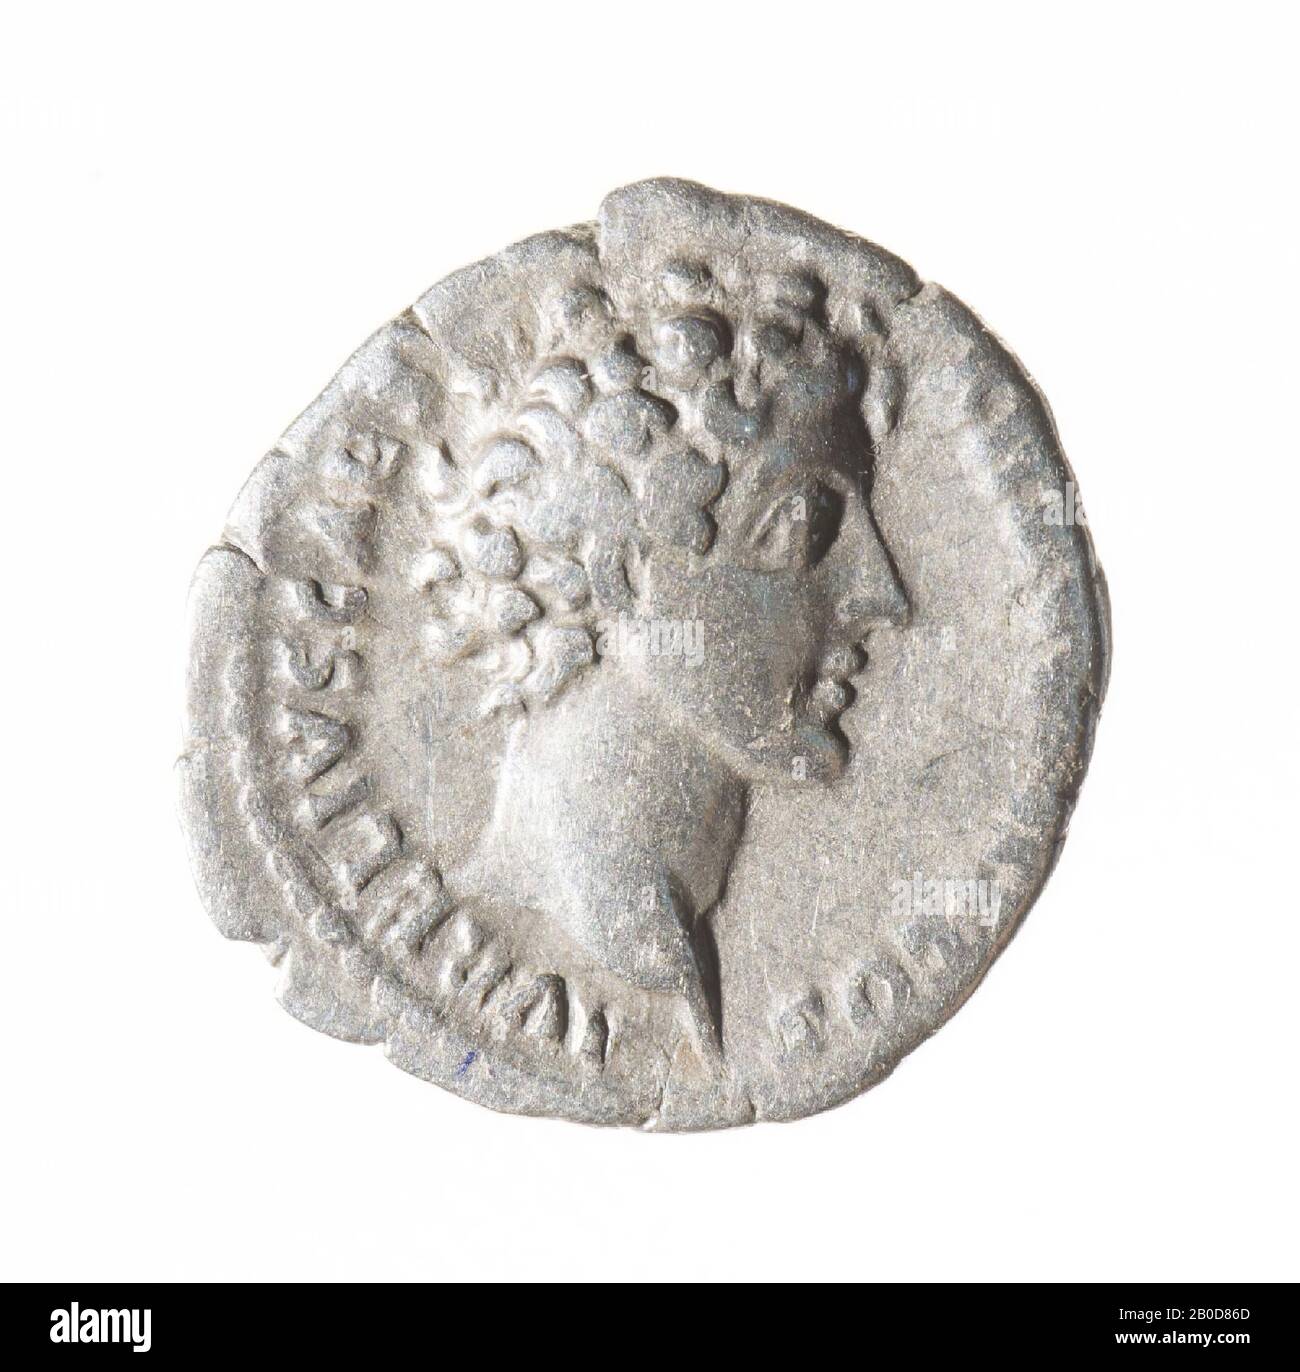 Obverse: Marcus Aurelius, right. Worn, remains of inscription: AVRELIVS CAESAR AVG PII F COS. Reverse: attributes of a priest: knife, sprinkler, can, lituus and simpulum. Worn, remains of inscription: PIETAS AVG., Coin, denarius of Marcus Aurelius under Antoninus Pius, metal, silver, diam: 1,6 cm, wt. 2.95 grams, 140-144 AD, unknown Stock Photo